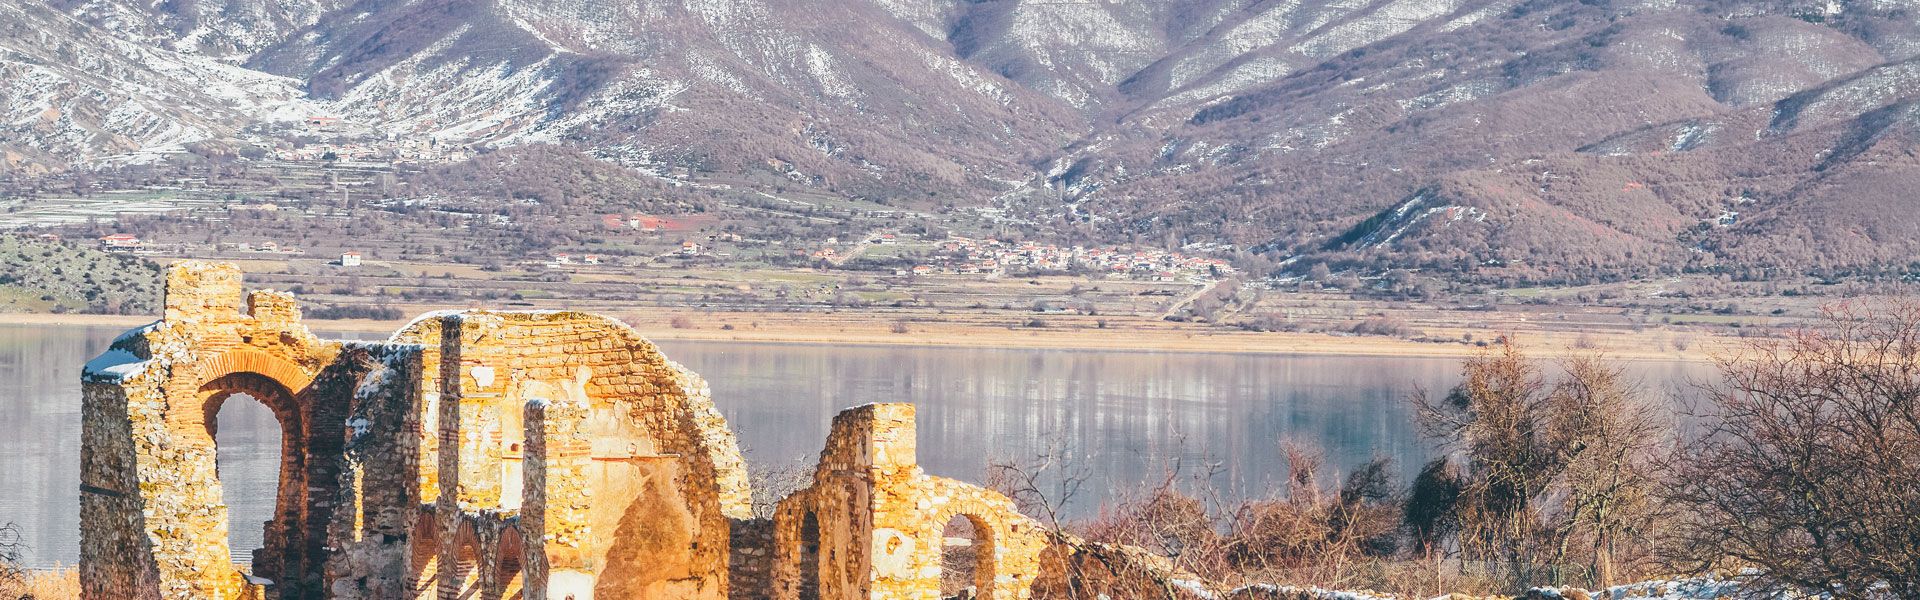 Agios Achillios, the basilica in the heart of Prespa